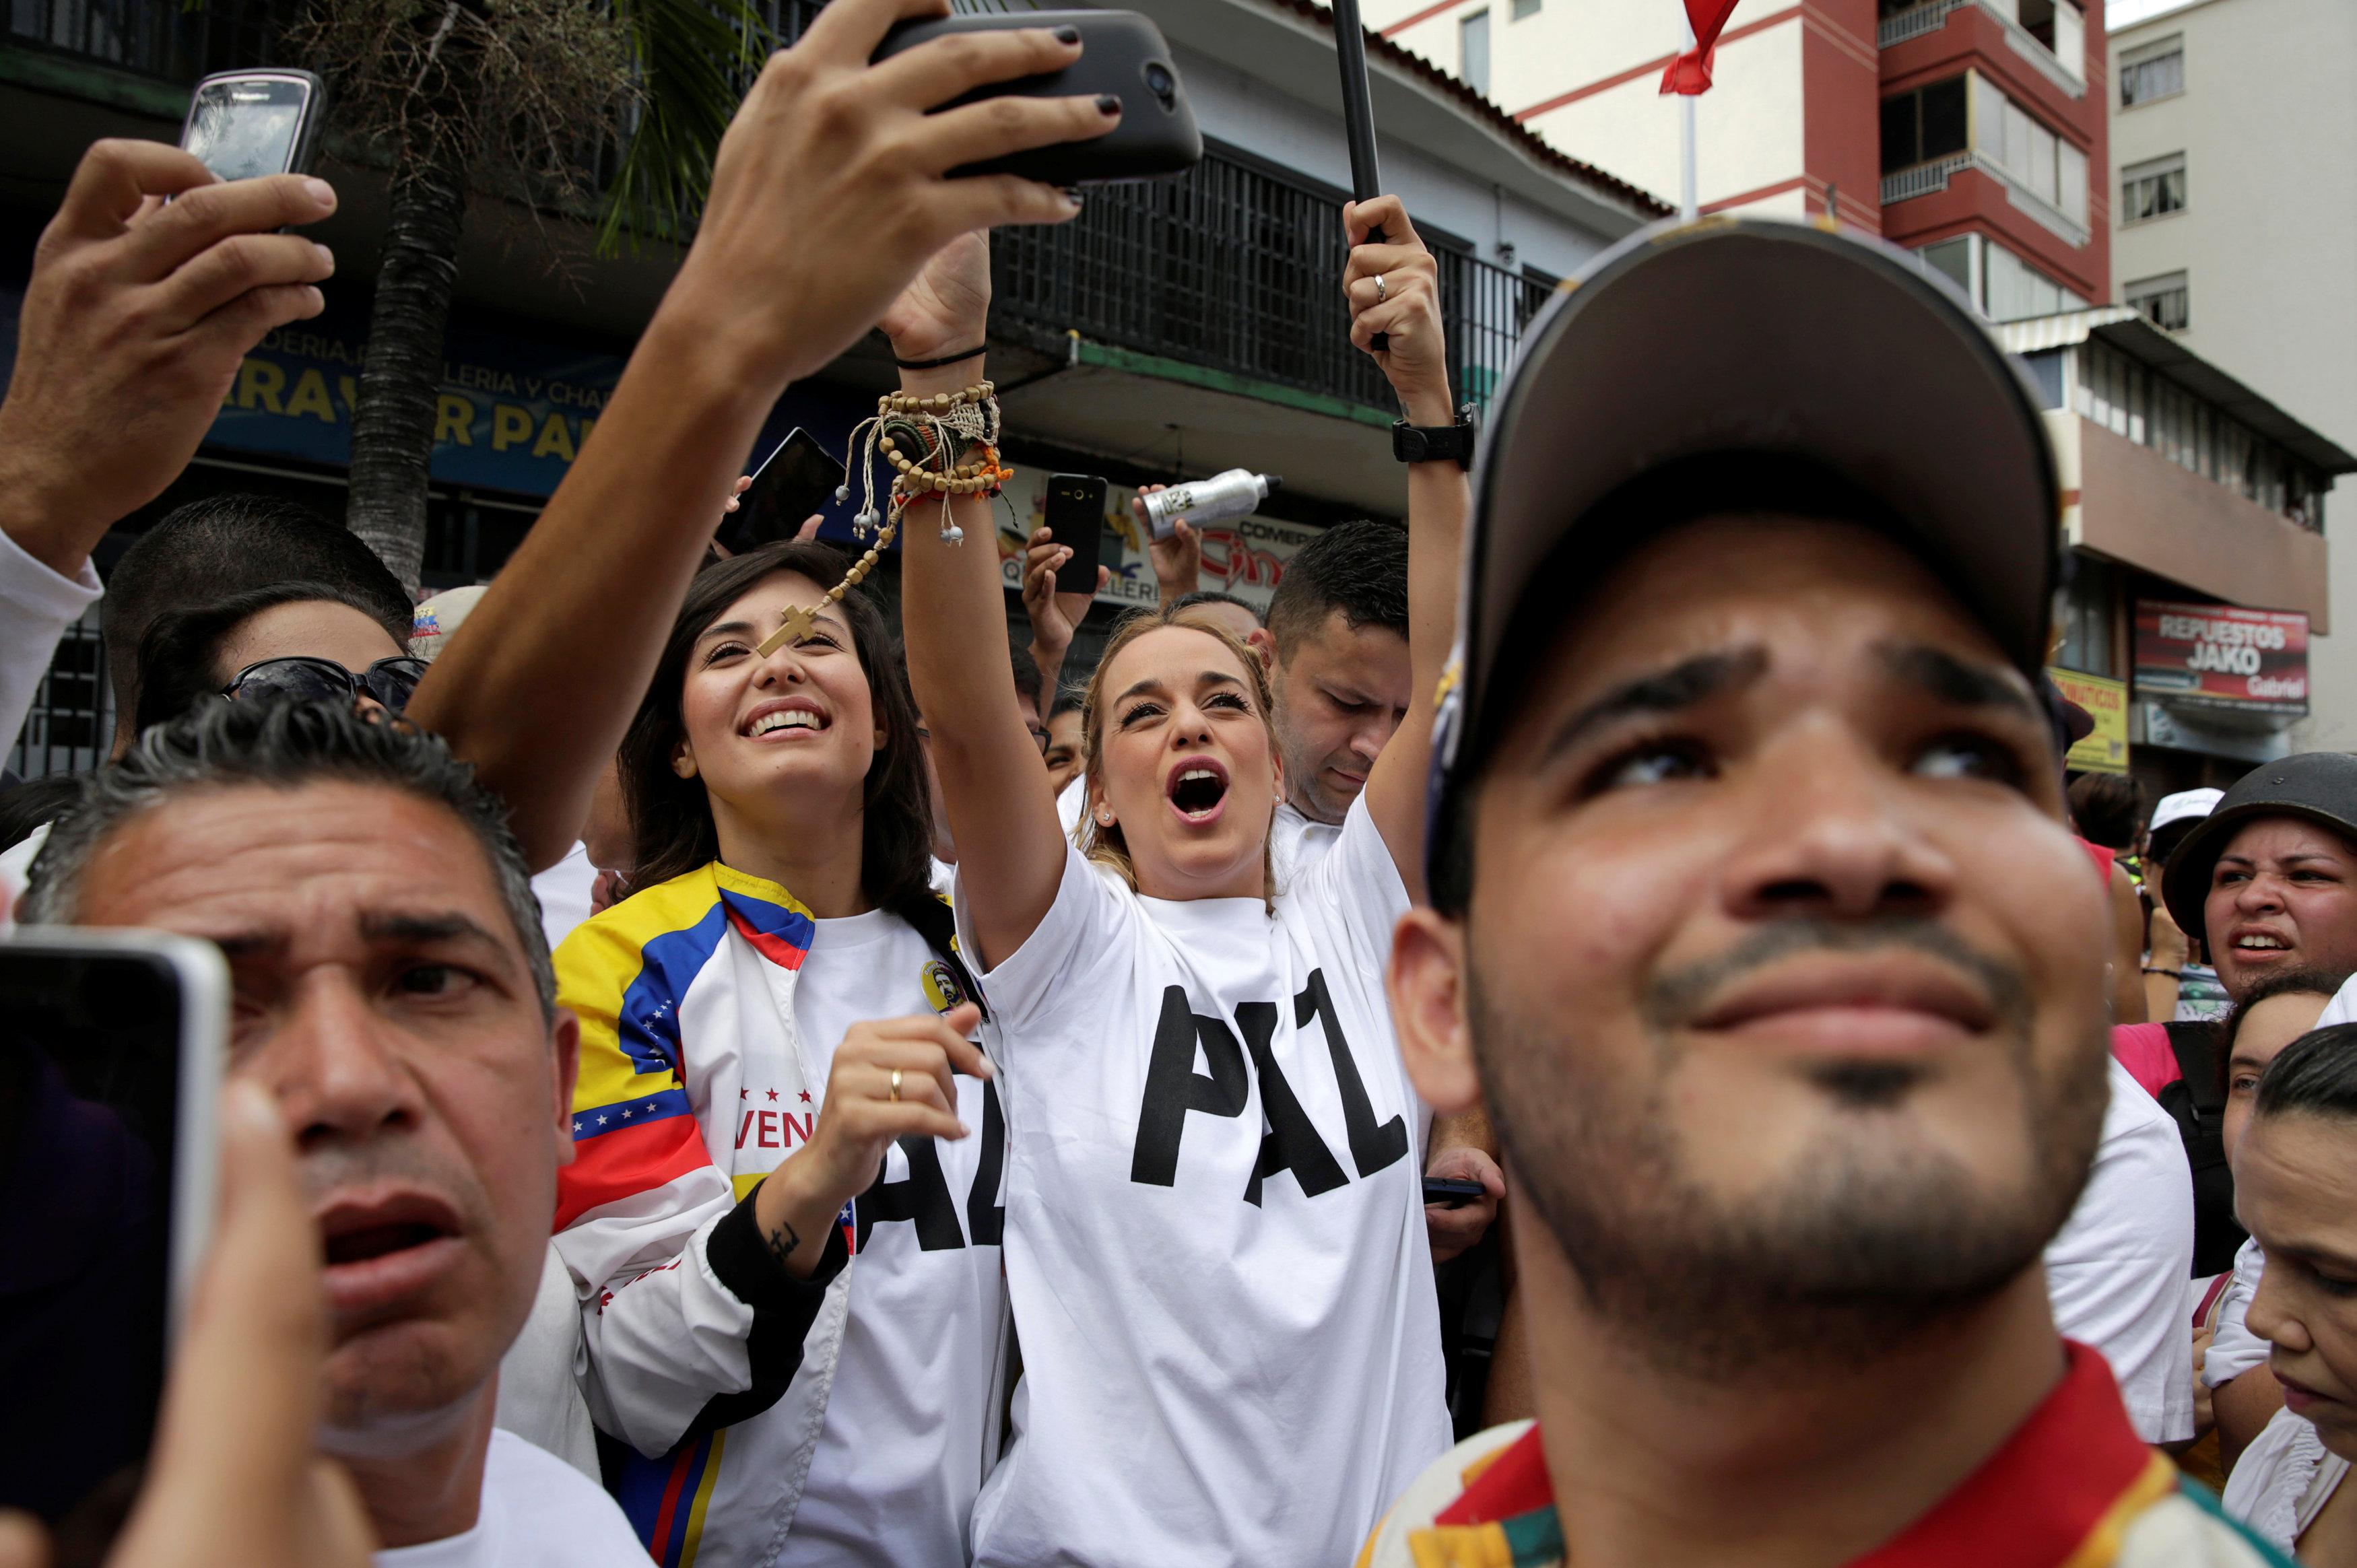 Así llegó Lilian Tintori a la concentración en el oeste de Caracas (fotos y Video)